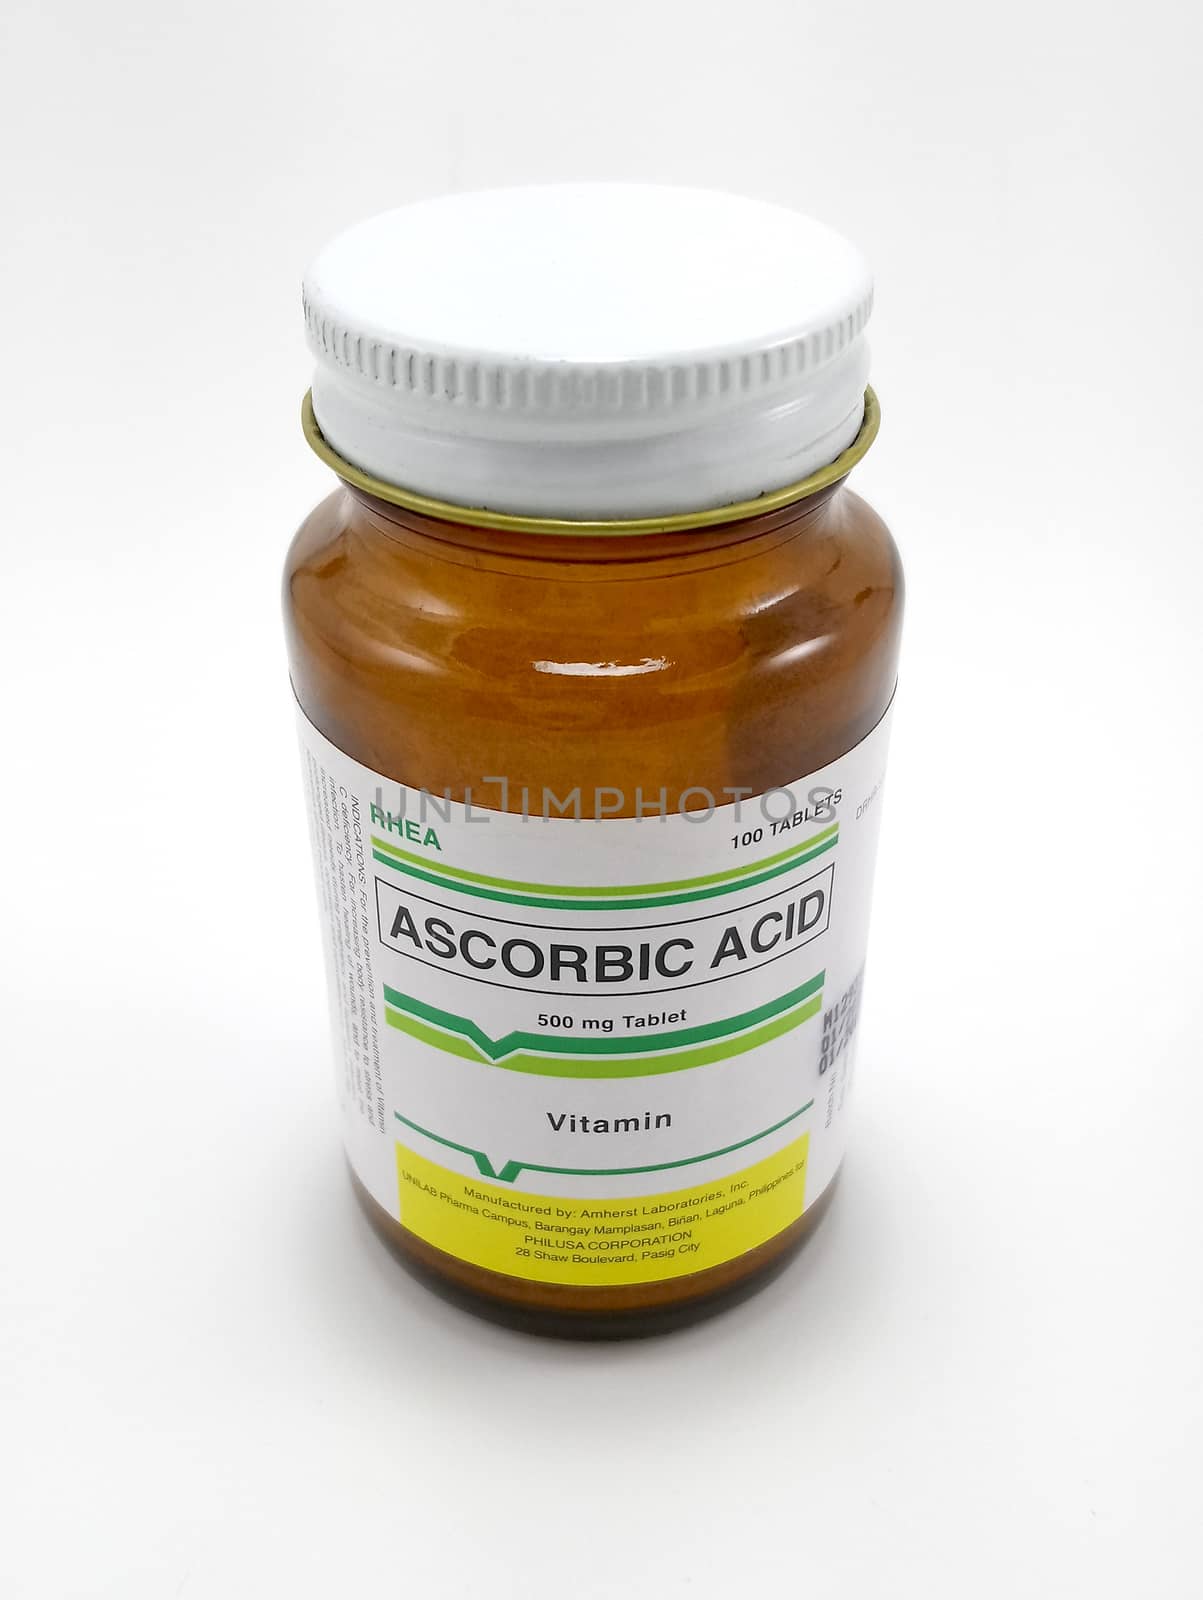 MANILA, PH - JUNE 23 - Rhea ascorbic acid vitamin c on June 23, 2020 in Manila, Philippines.